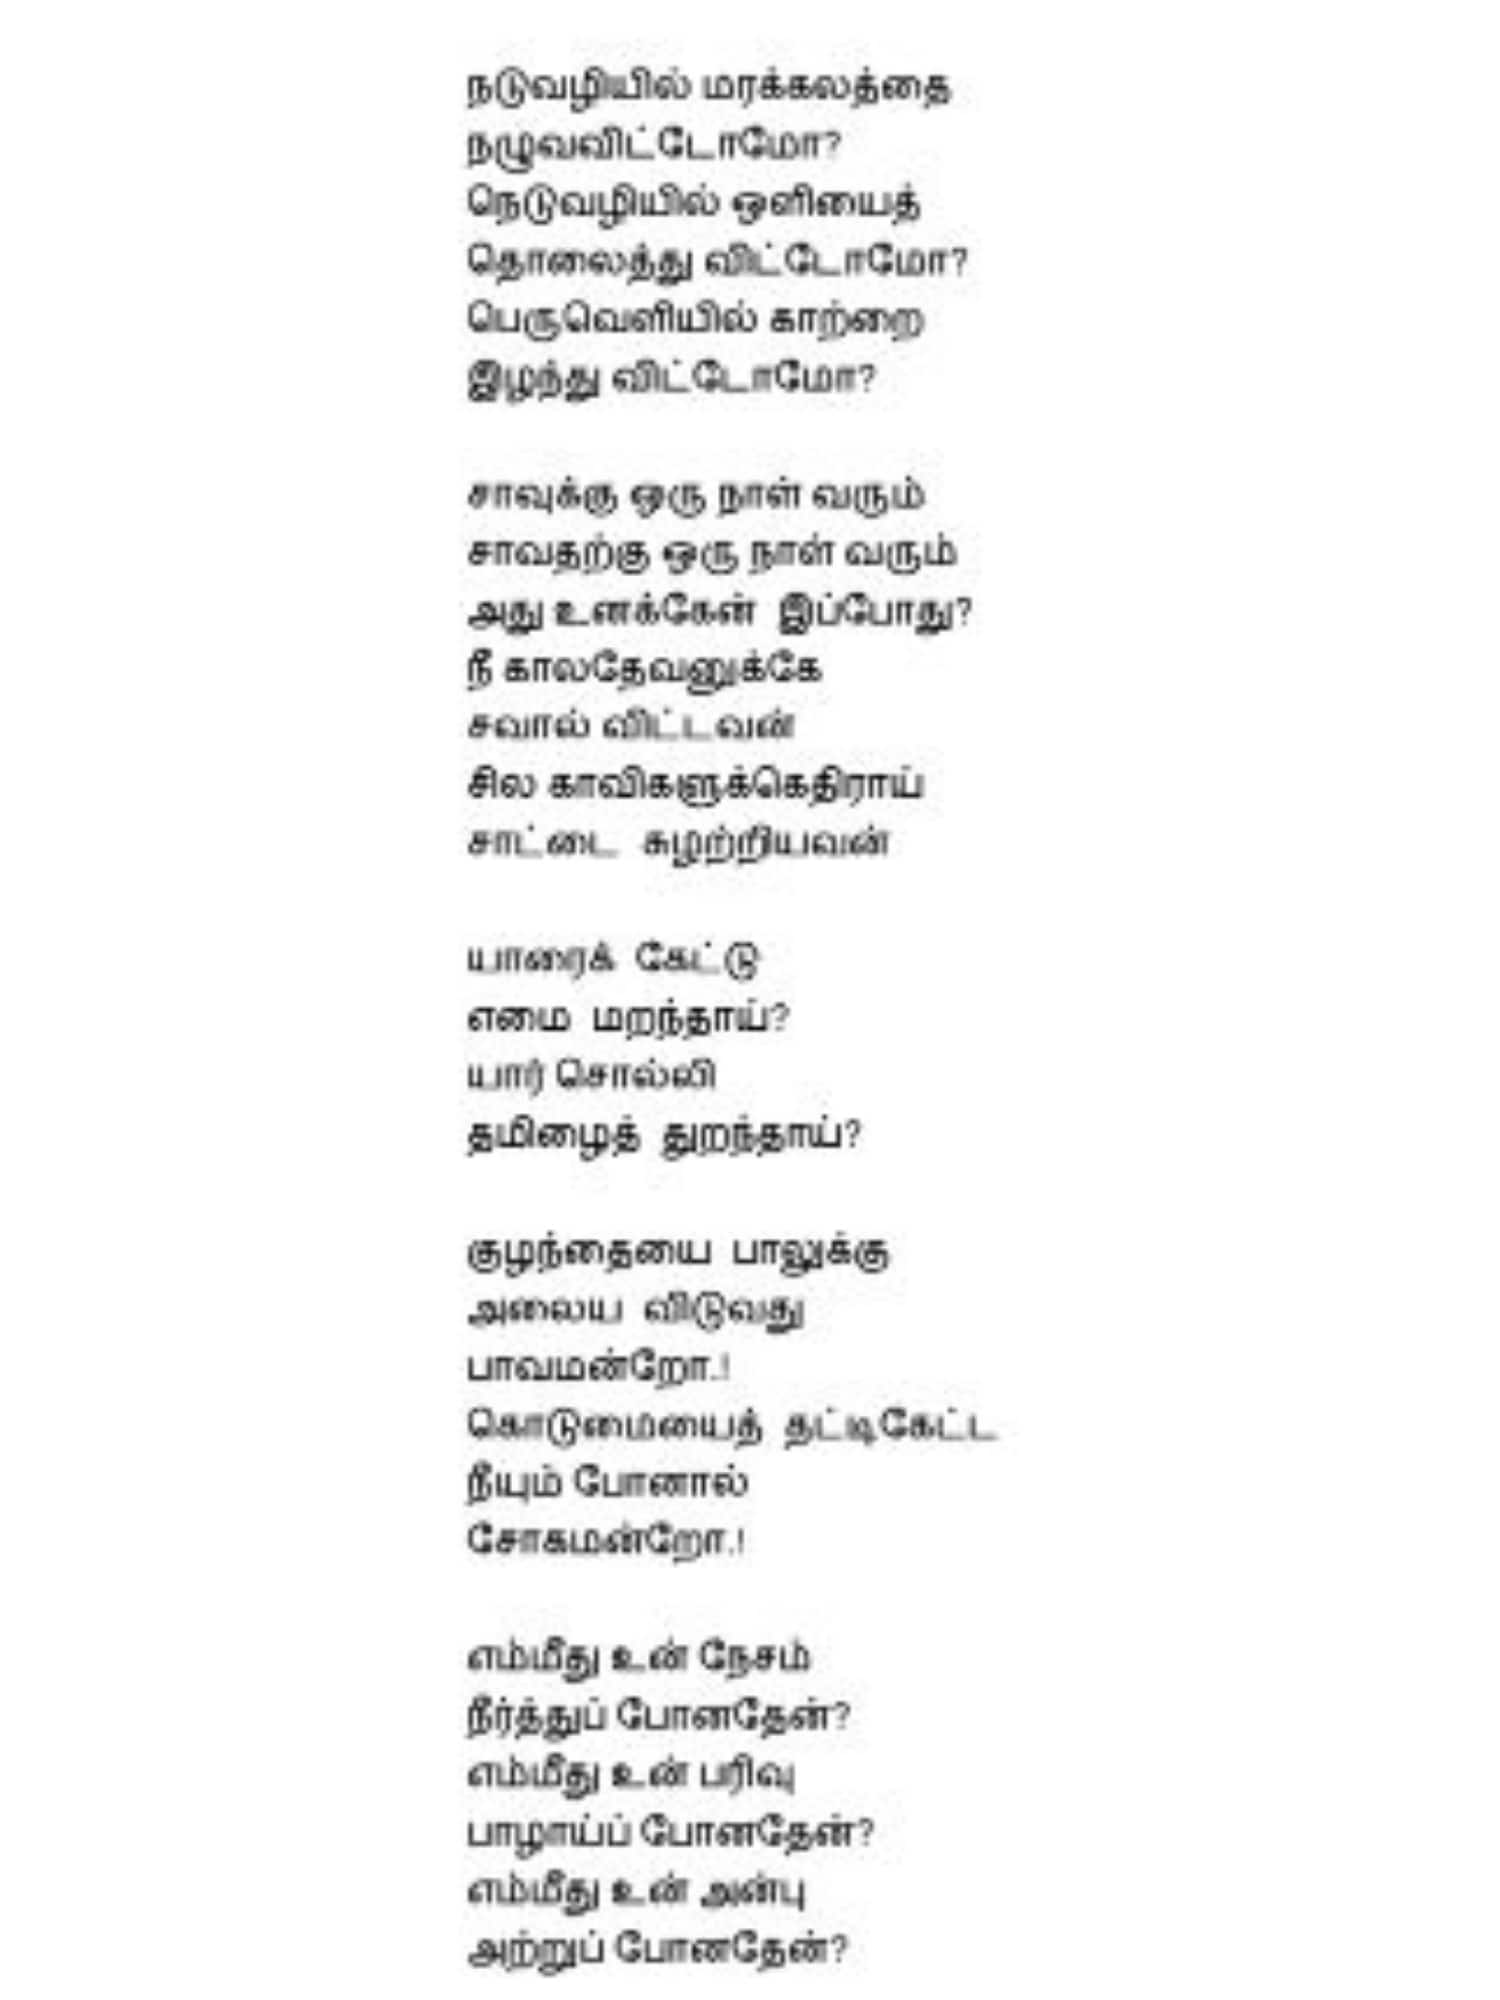 ameer wrote the poem for karunanithi